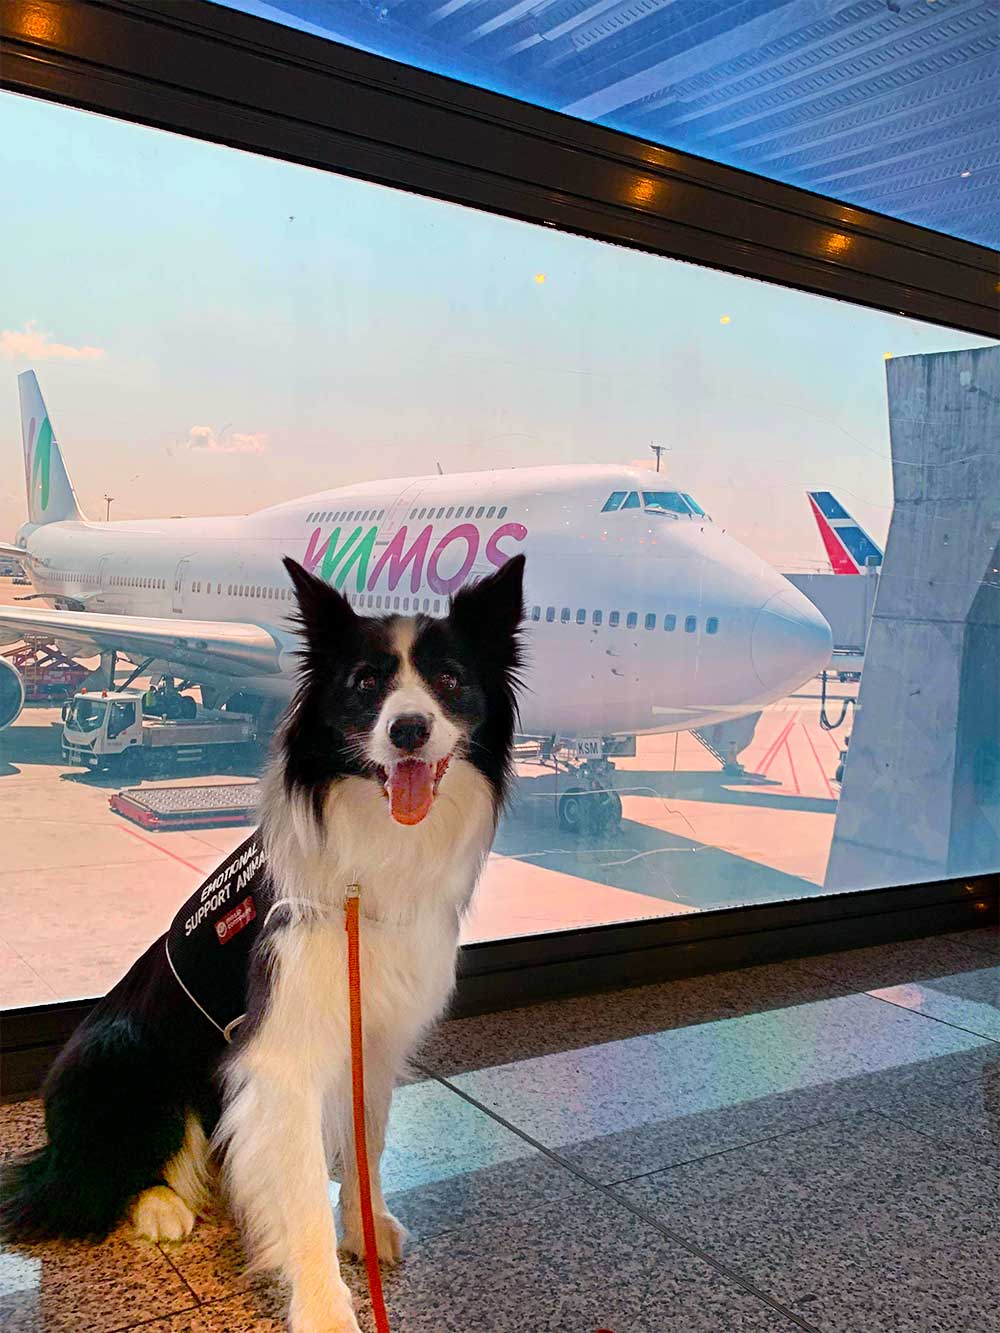 Rafa com o avião da Wamos Air em fundo, no aeroporto.